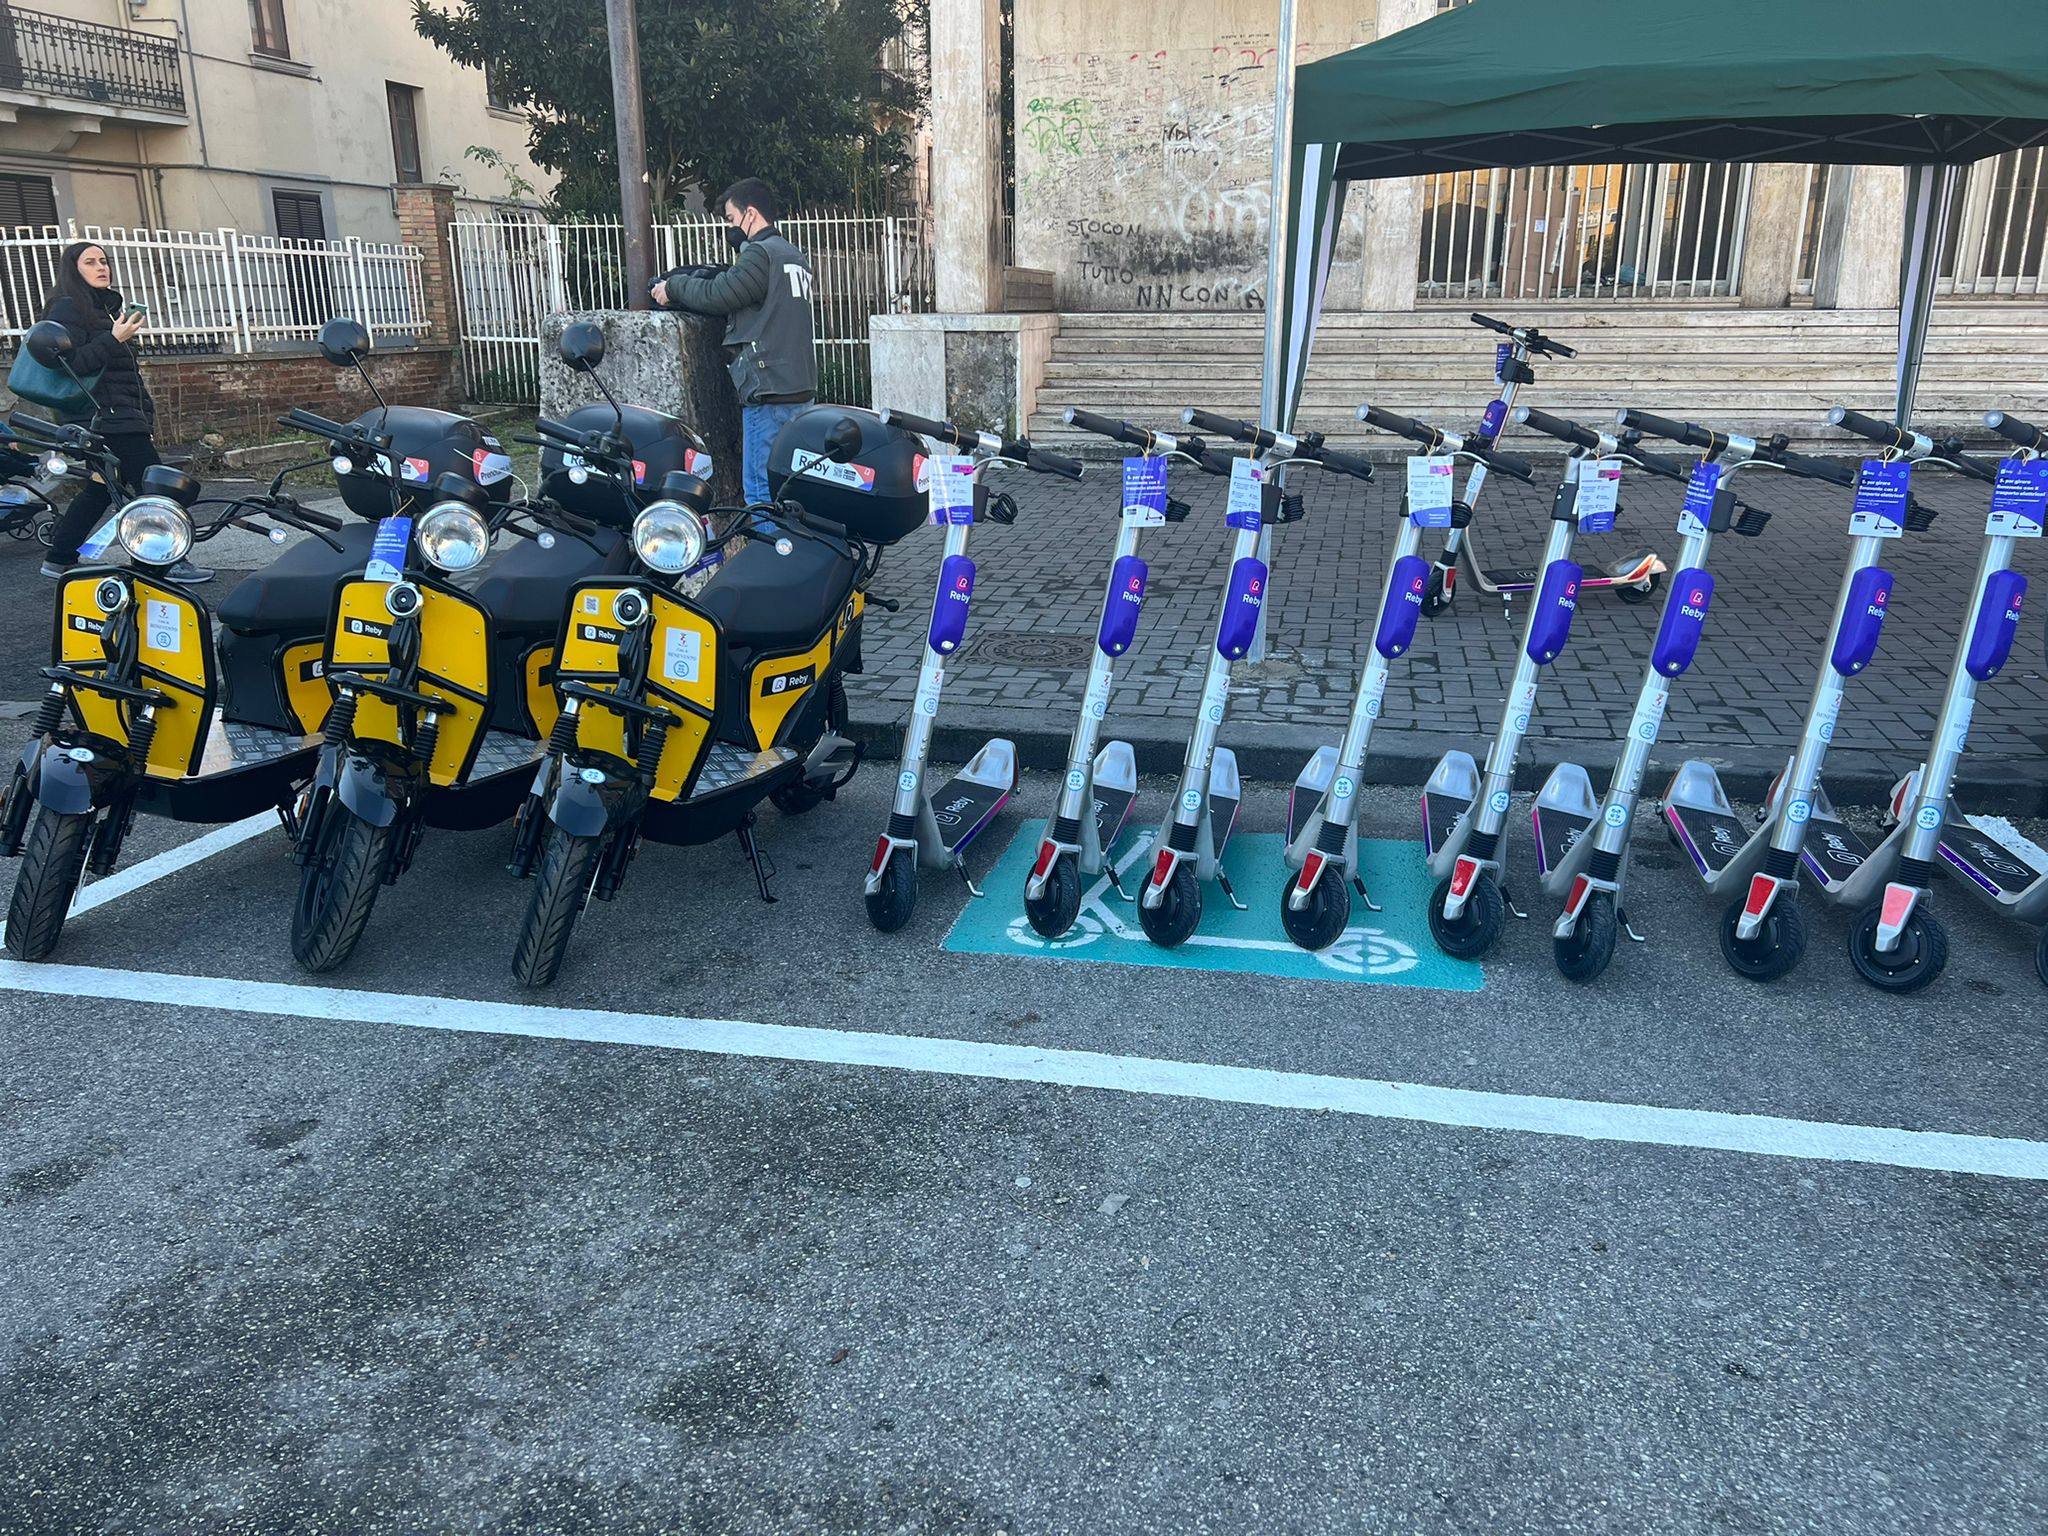 Benevento| Mobilità sostenibile, in città arrivano monopattini e scooter elettrici in modalità sharing